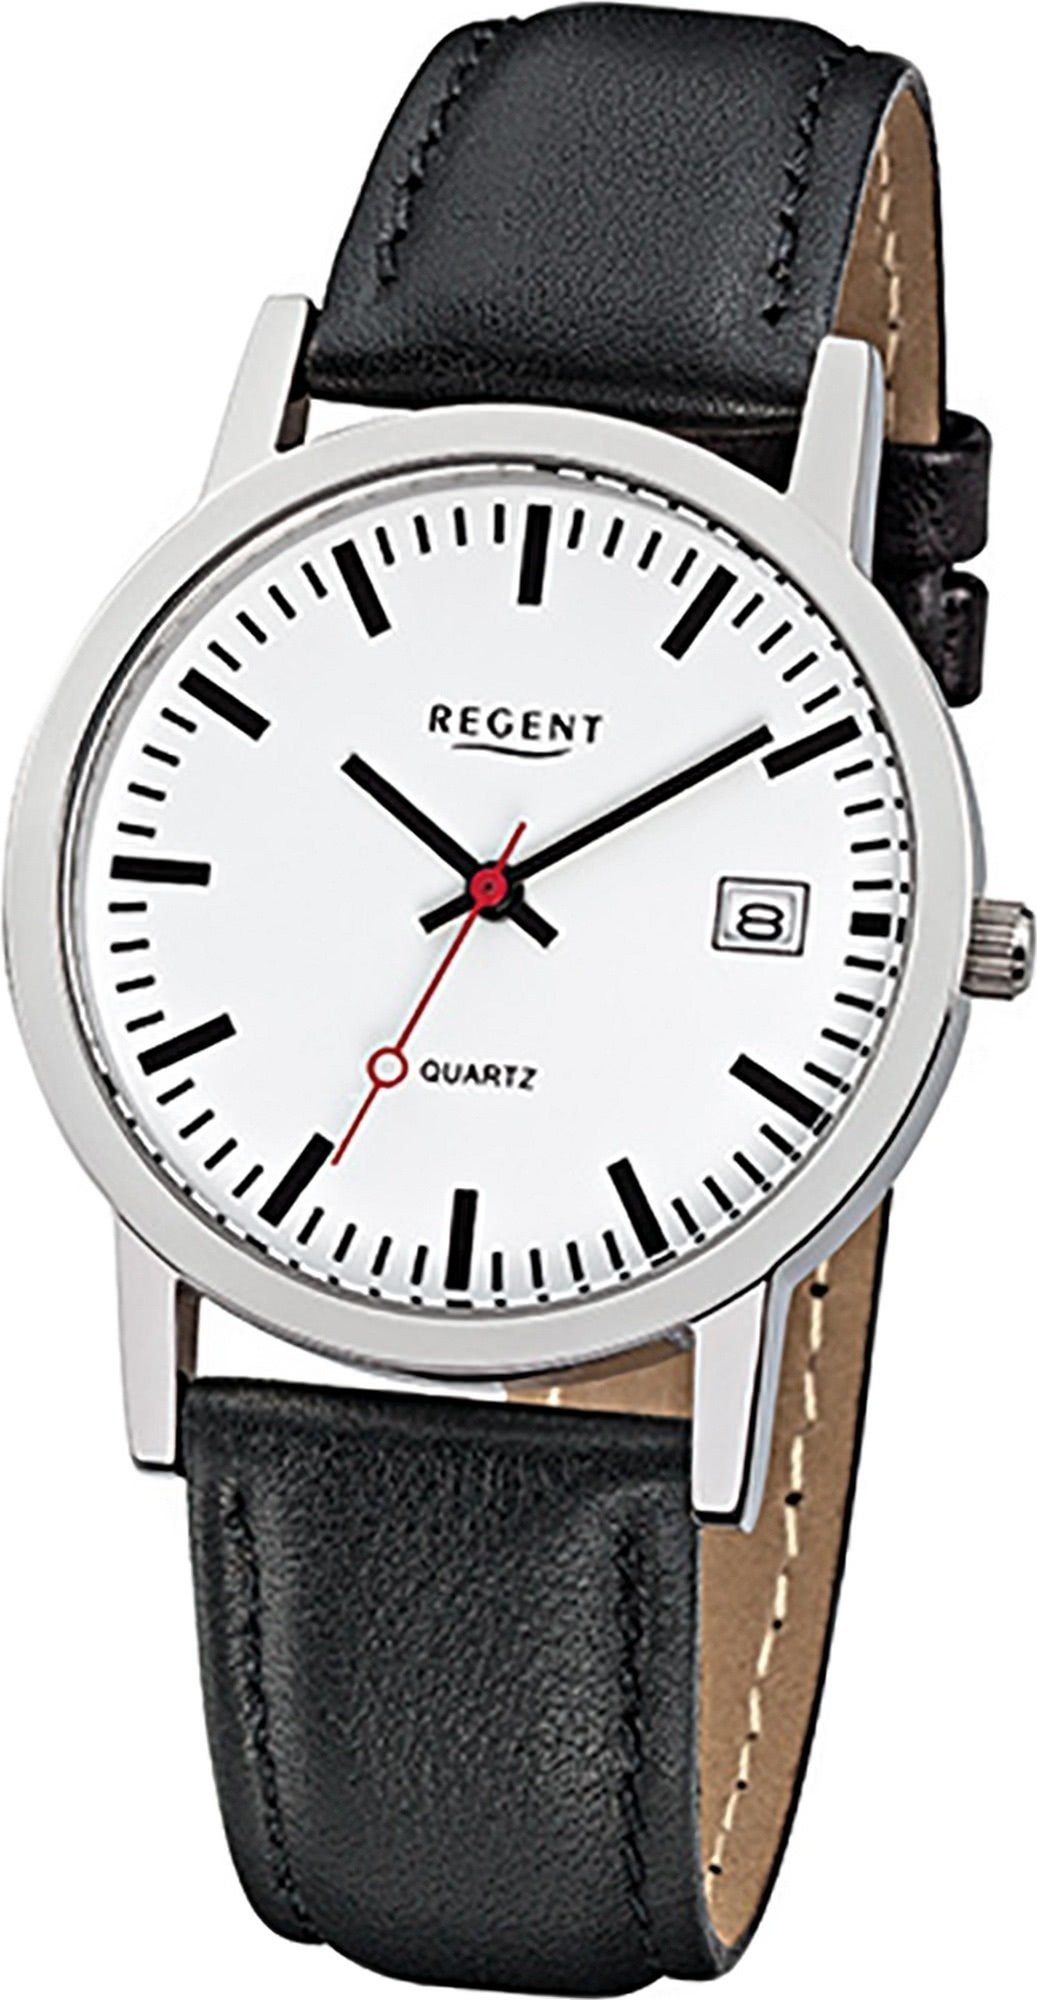 Regent Quarzuhr Regent Leder Damen Herren Uhr F-794, (Analoguhr), Damen, Herrenuhr Lederarmband schwarz, rundes Gehäuse, mittel (34mm)